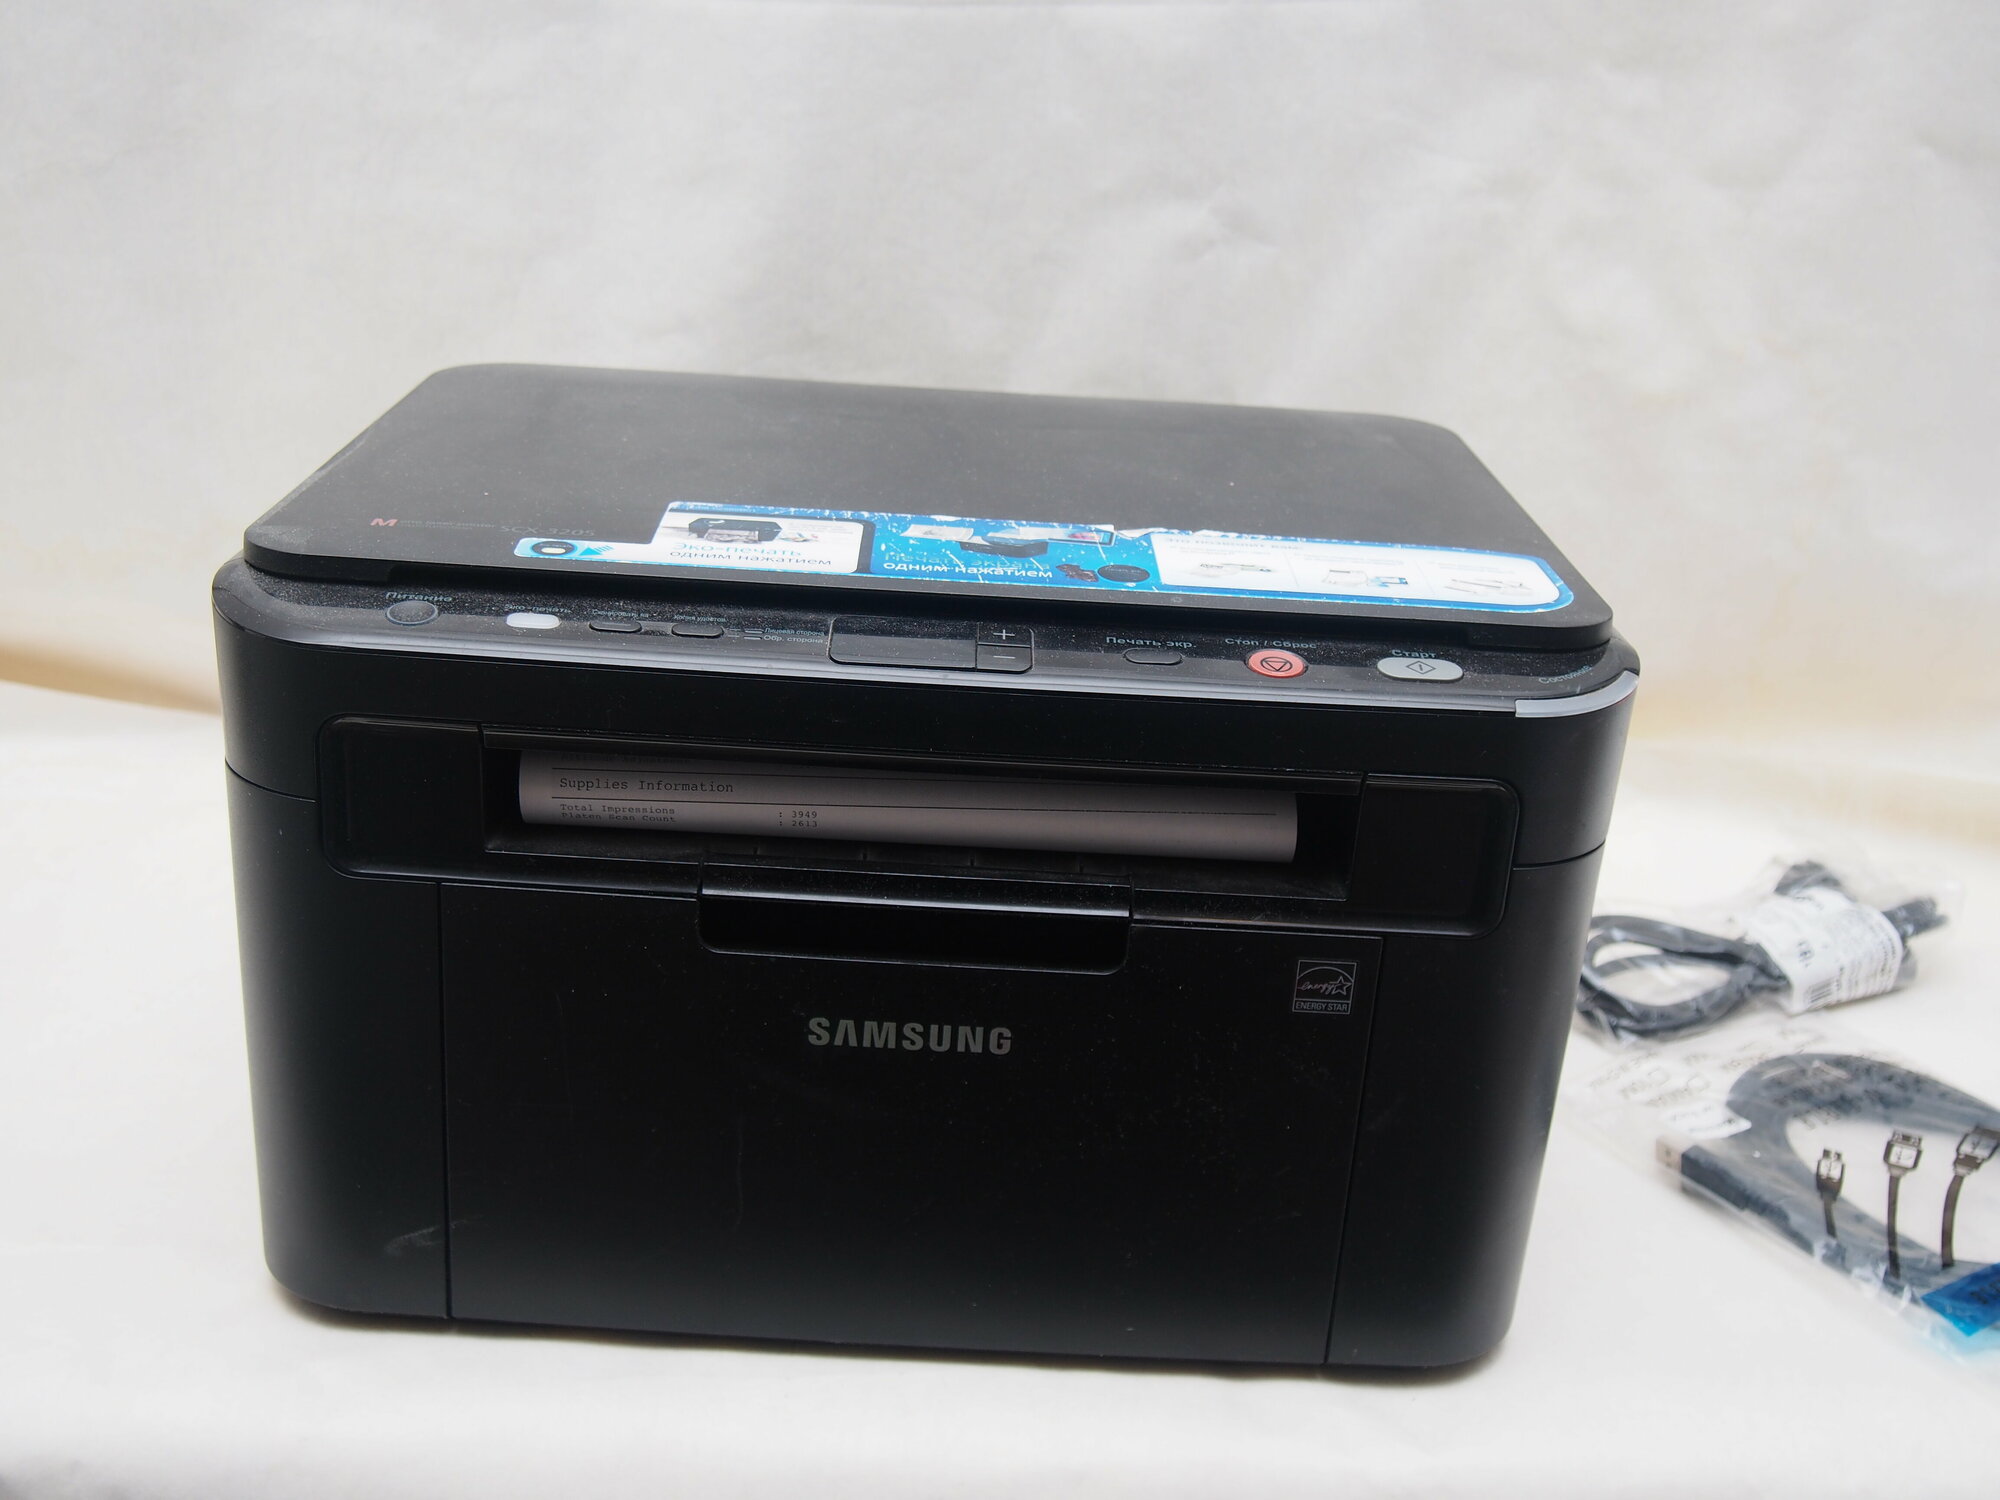 Лазерное МФУ "Samsung SCX-3205" копирует , сканирует , печатает по USB